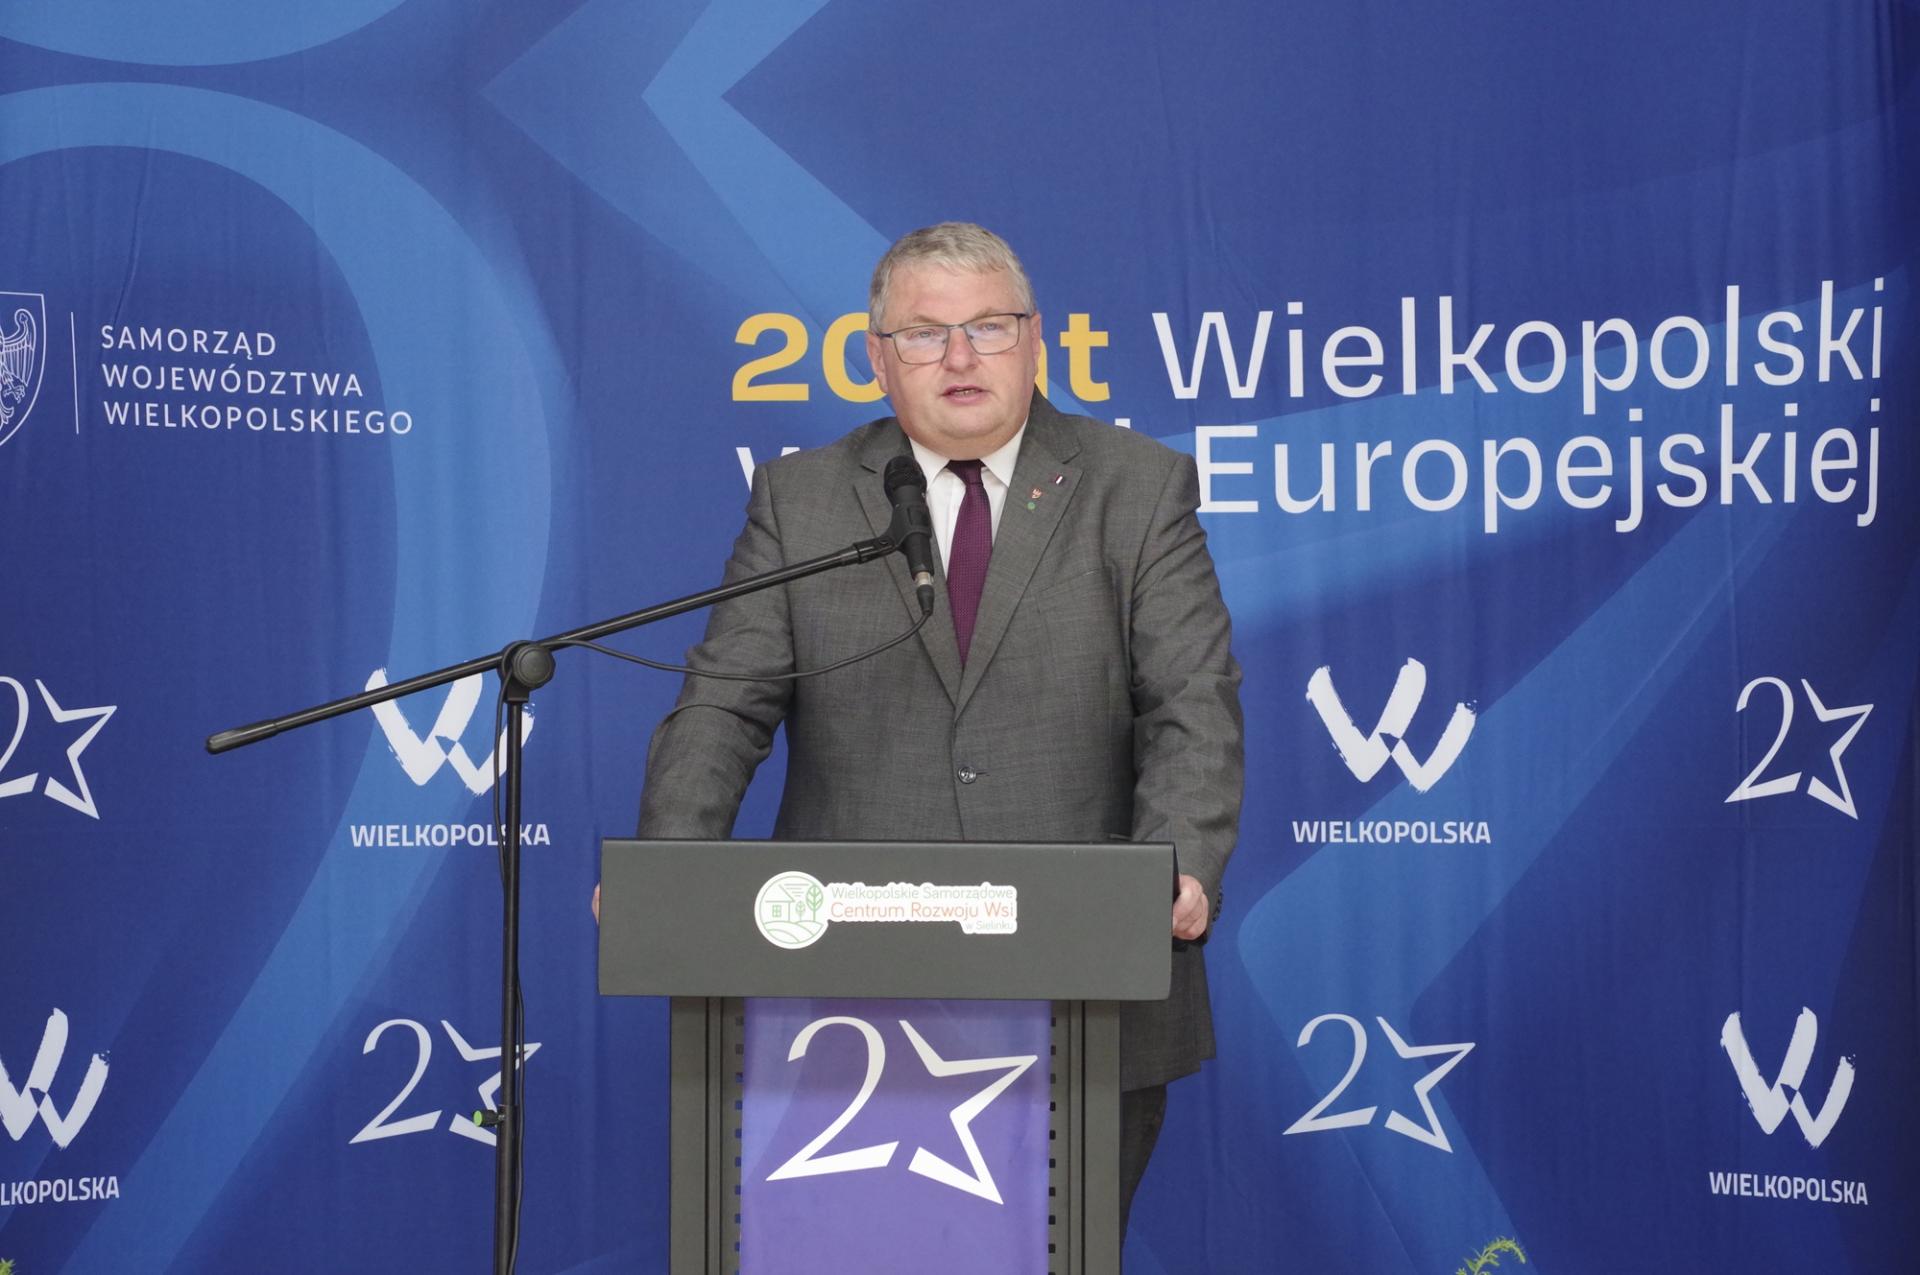 Wielkopolska Wieś Europejska - w Rychwale i Liskowie o naszym 20-leciu w UE  - zobacz więcej